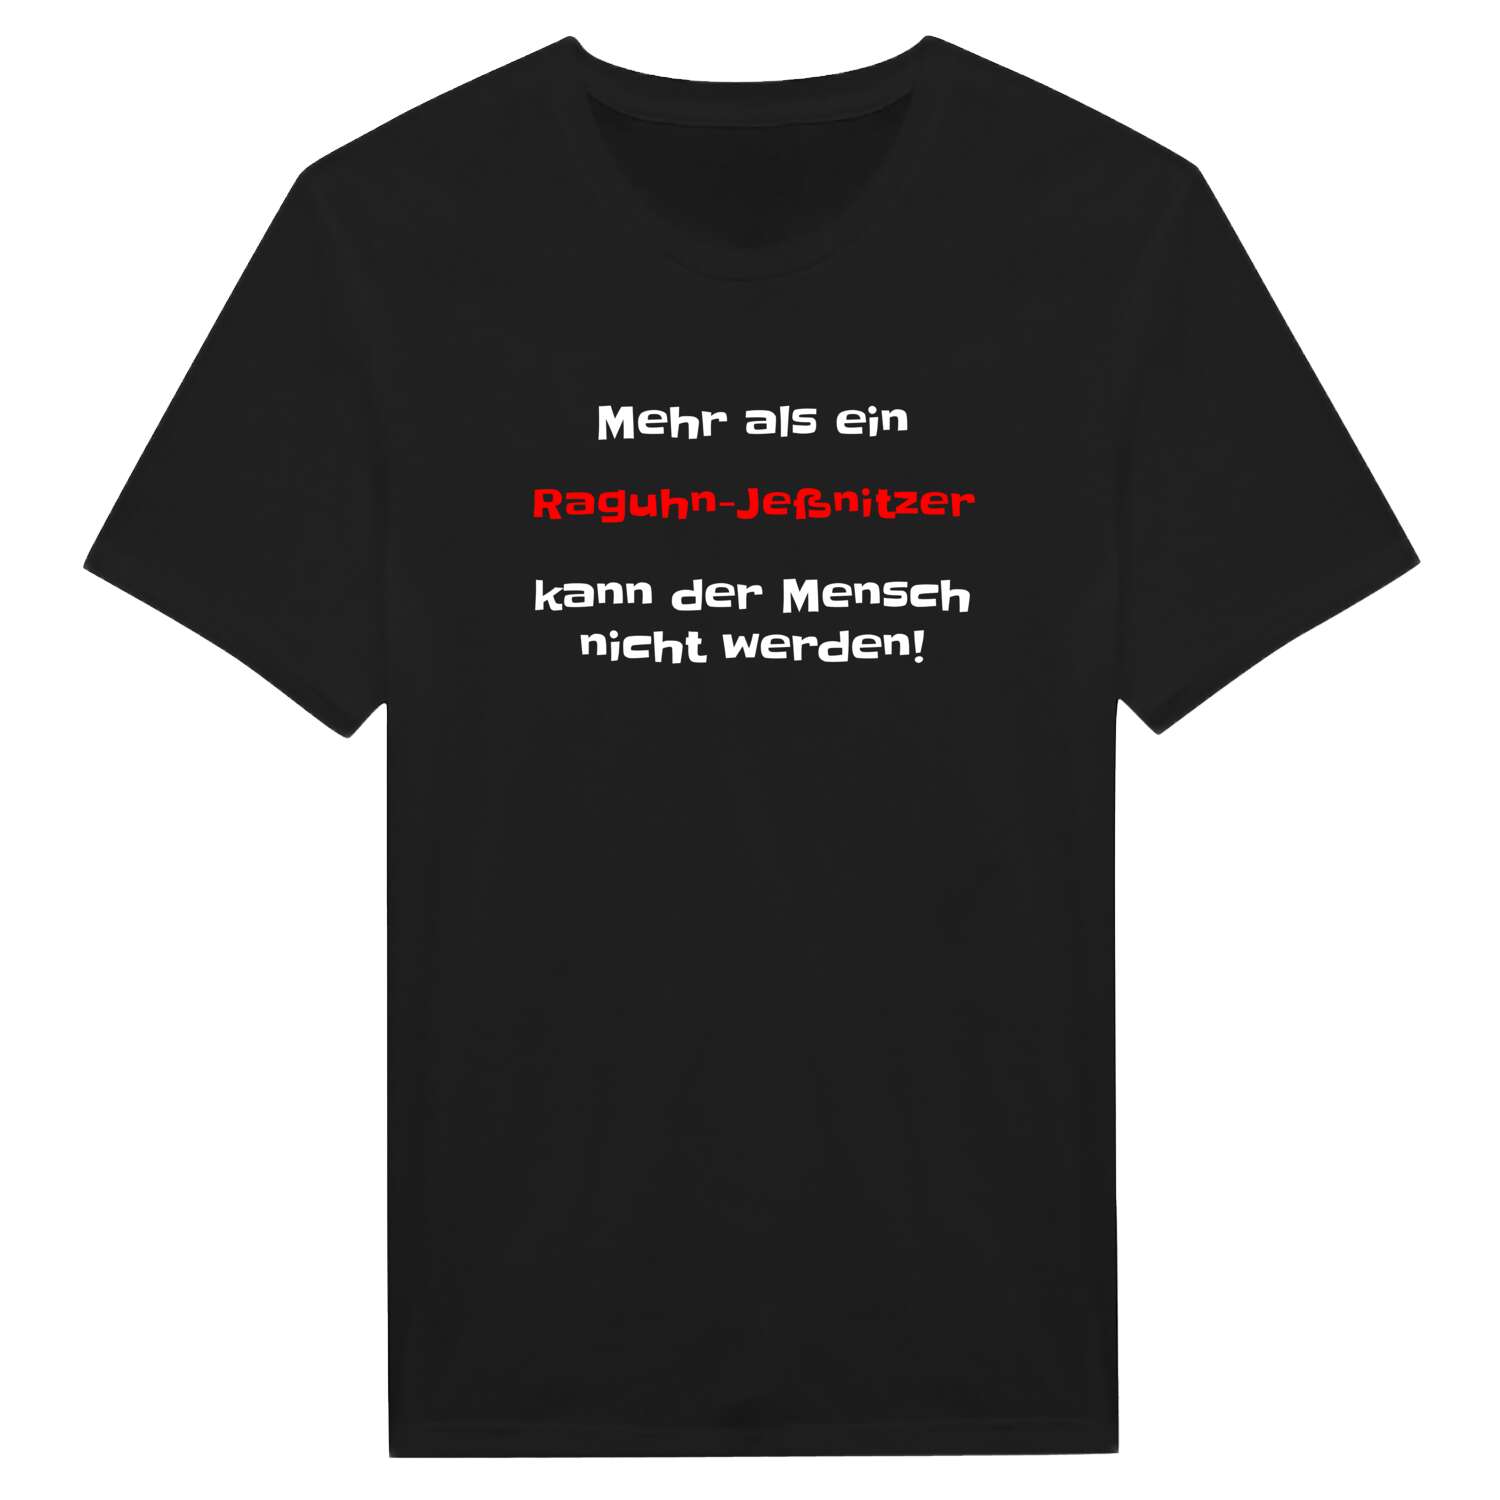 Raguhn-Jeßnitz T-Shirt »Mehr als ein«